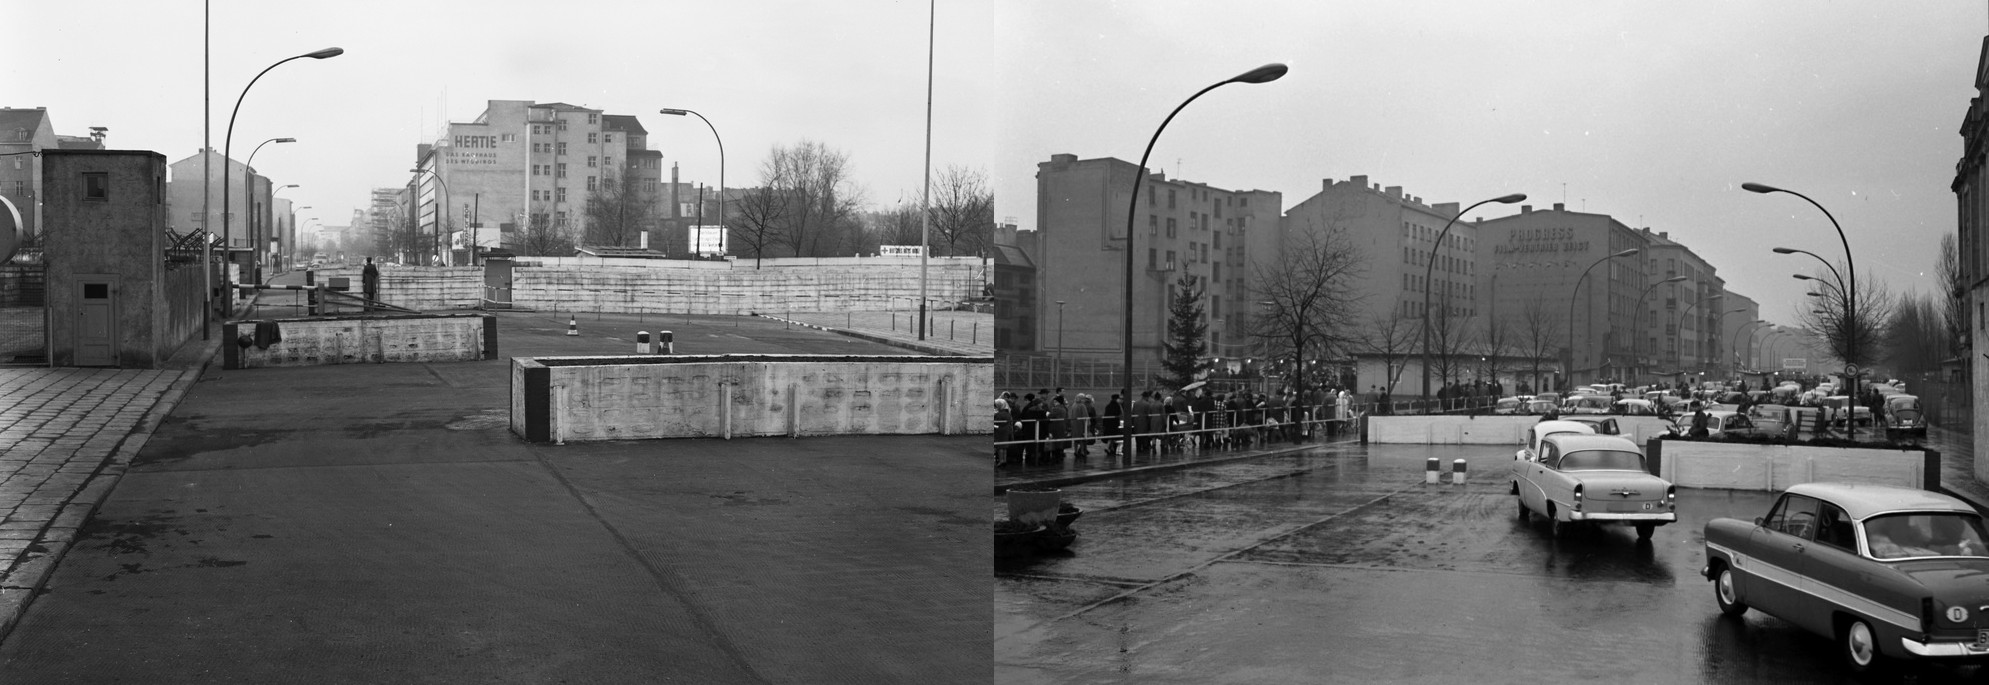 Der Grenzübergang zwischen BRD und DDR in der Chausseestraße, 2 alte Fotos von der Stasi